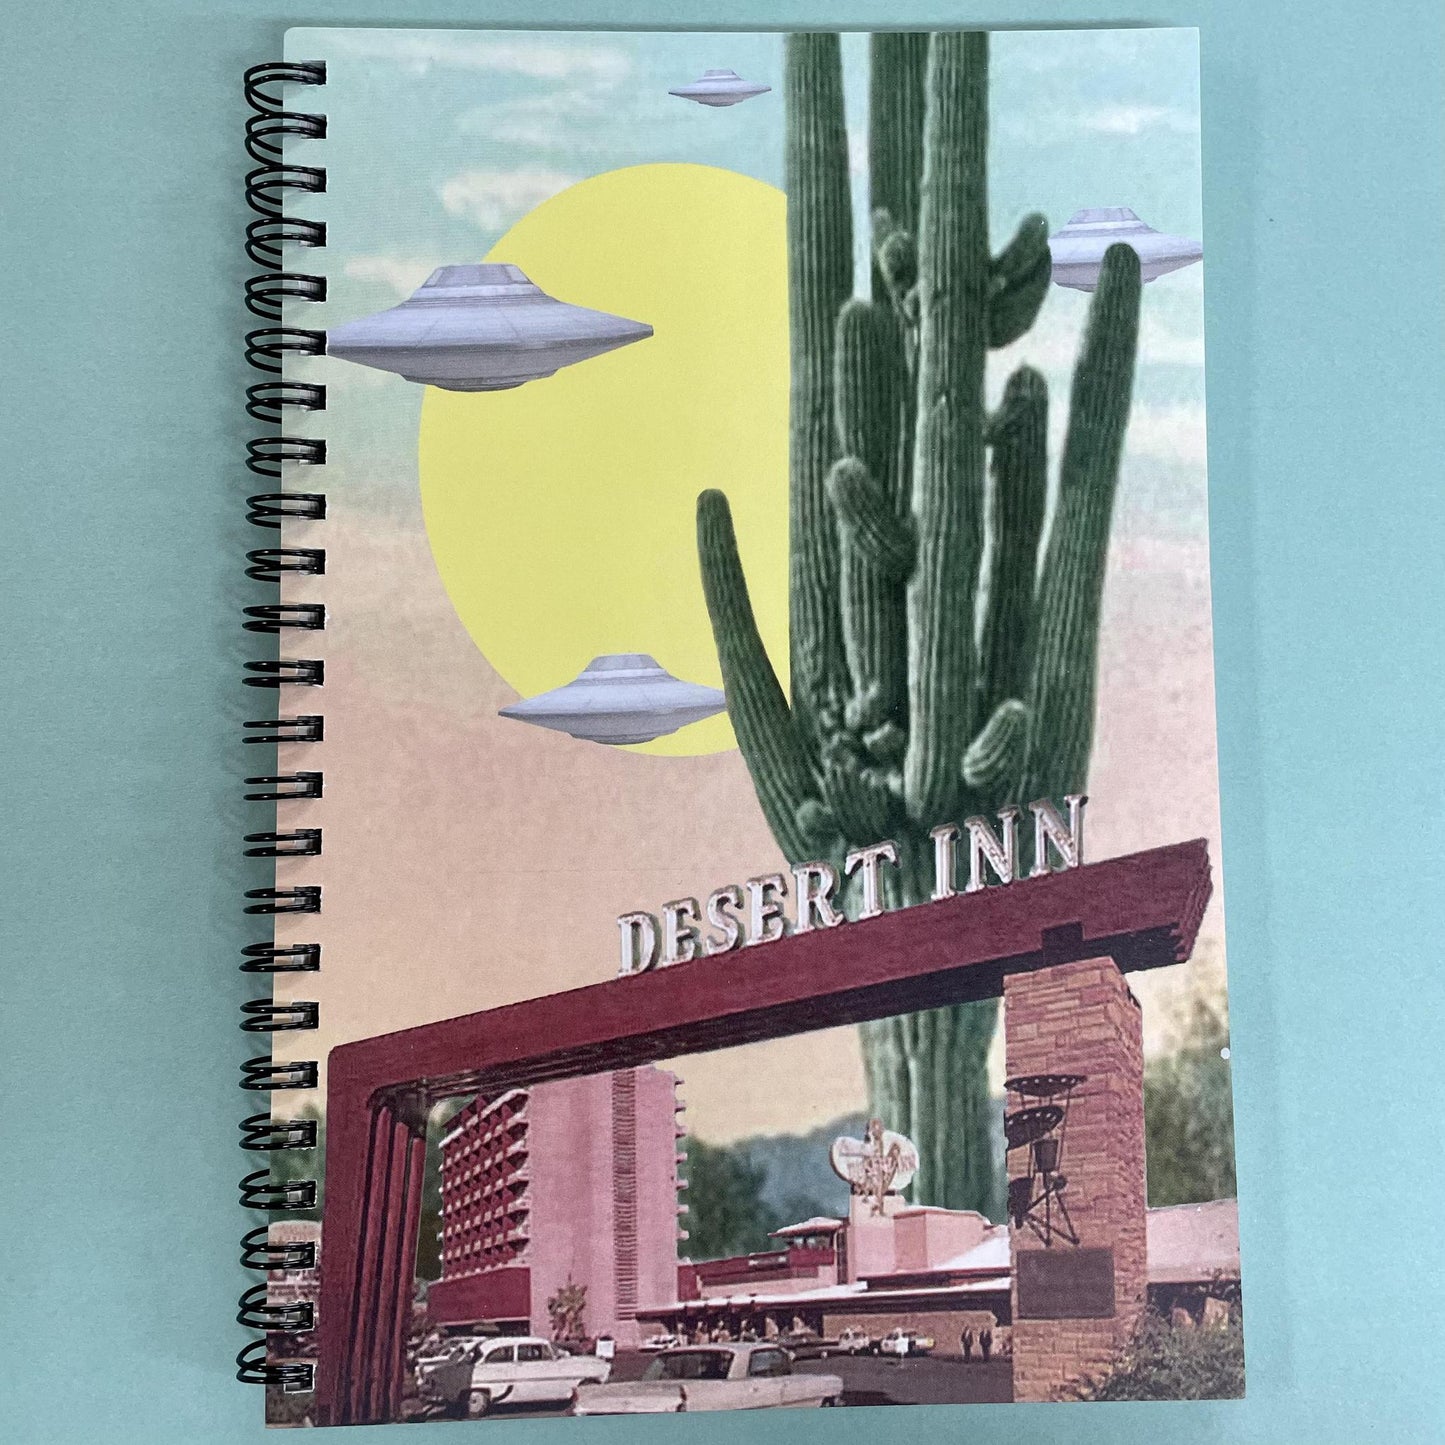 Desert Inn Alien Notebook